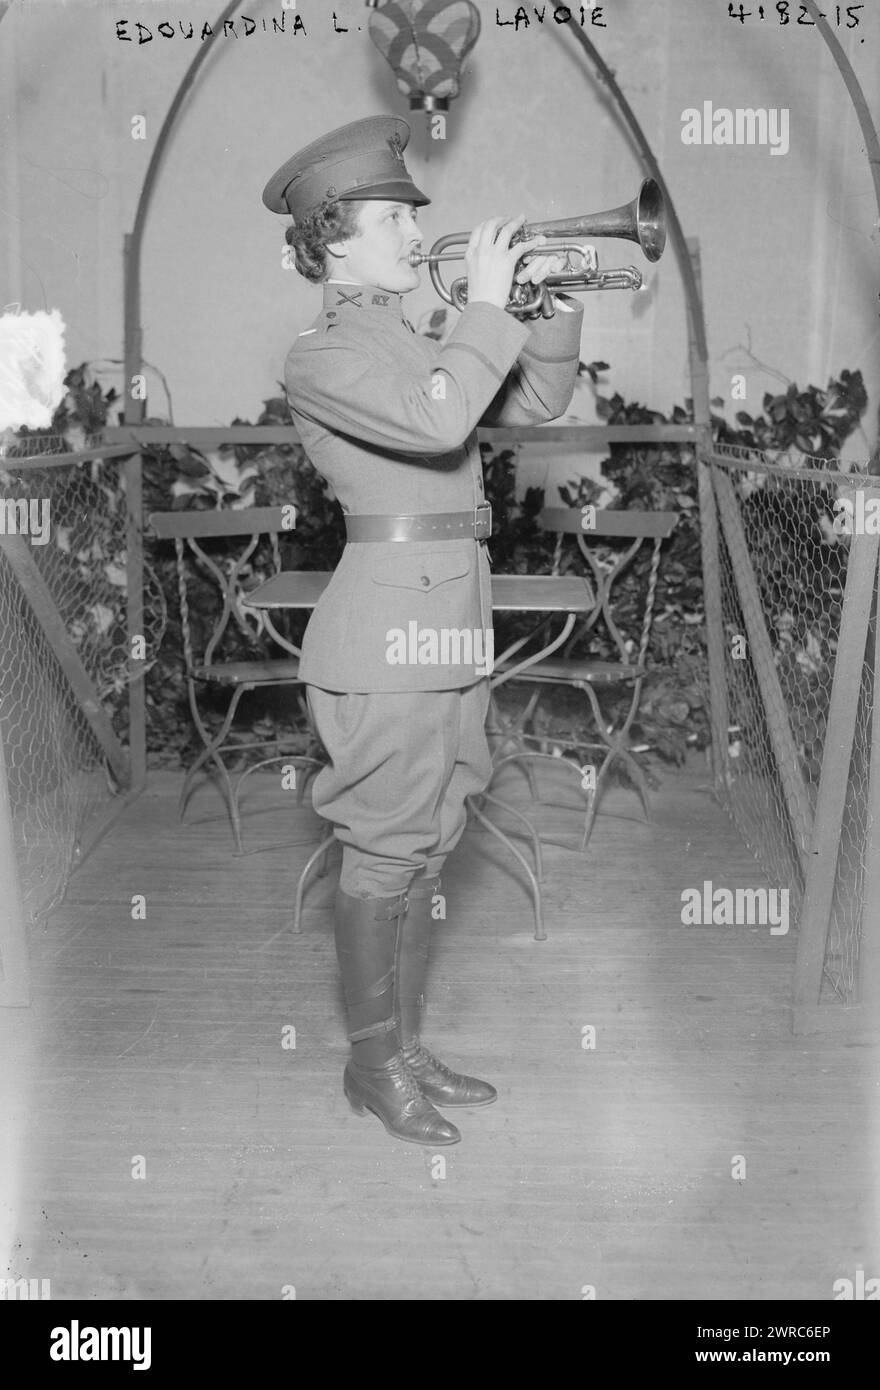 Edouardina i.e. Edwardina L. Lavoie, photographie montre Edwardina Lavoie, bugler de la 1st Field Artillery de la Garde nationale de New York, la seule femme bugler connue dans une bande militaire., 1917 avril 26, Glass négatifs, 1 négatif : Glass Banque D'Images